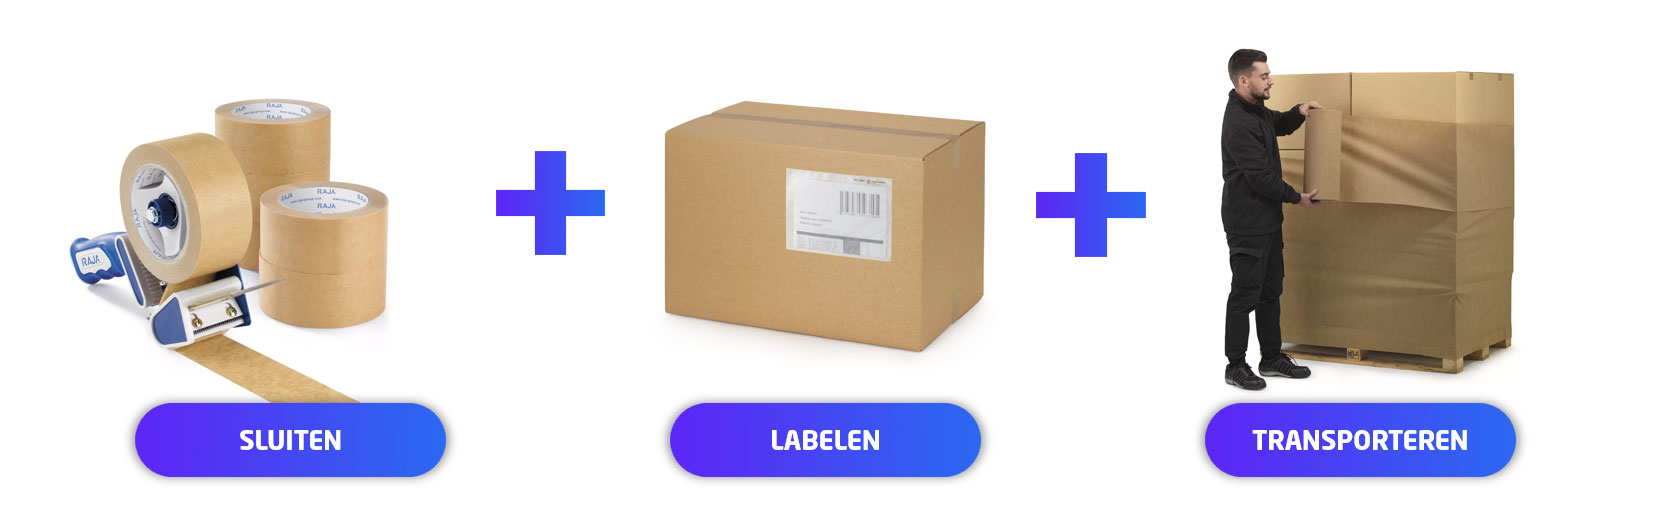 Monoverpakkingen van RAJA: sluiten, labelen en transporteren met oplossingen van papier